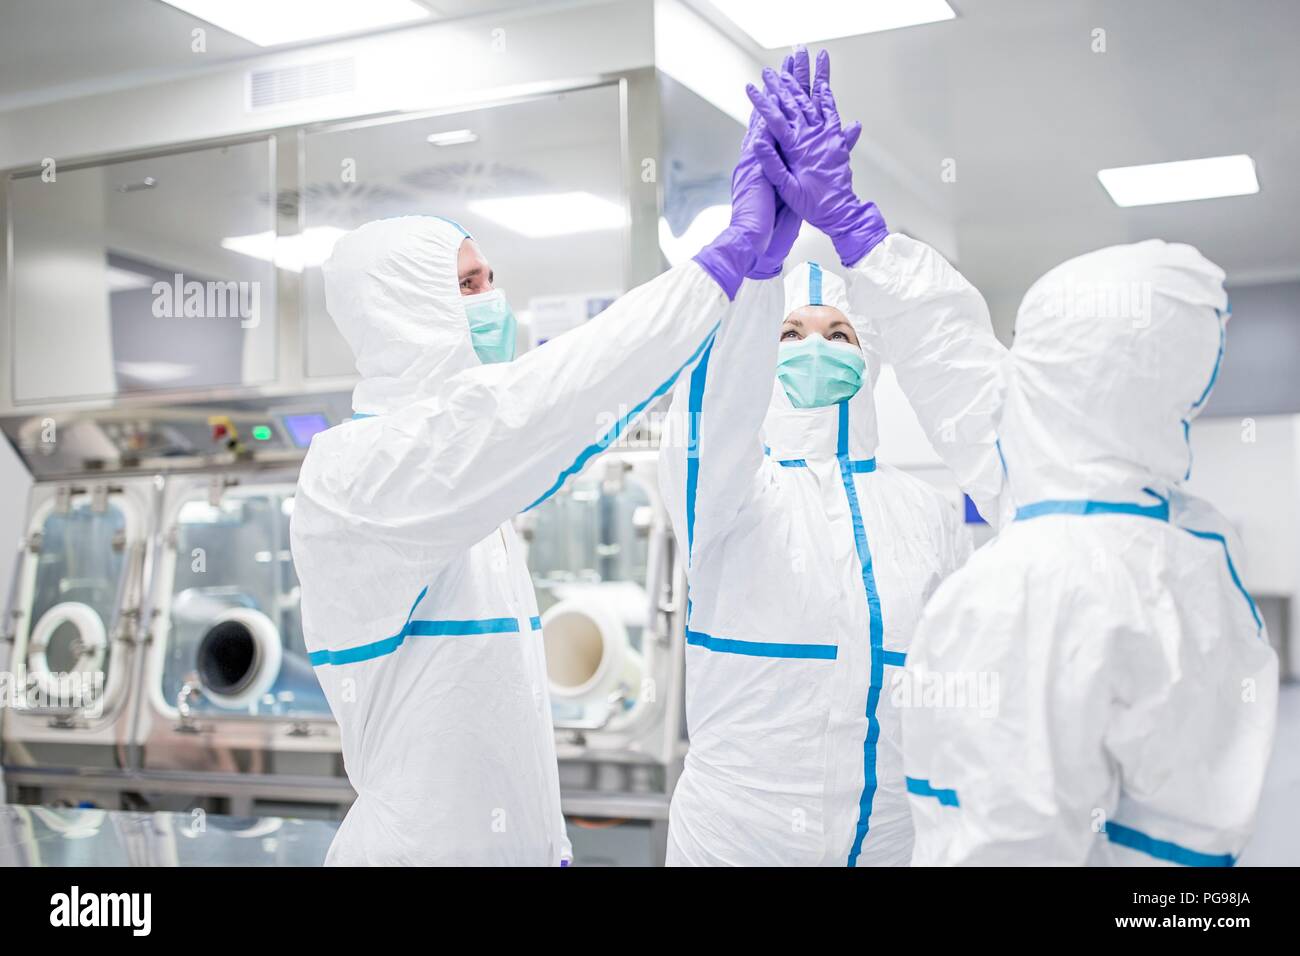 Labortechniker in einer sterilen Umgebung high-FIVING. Stockfoto